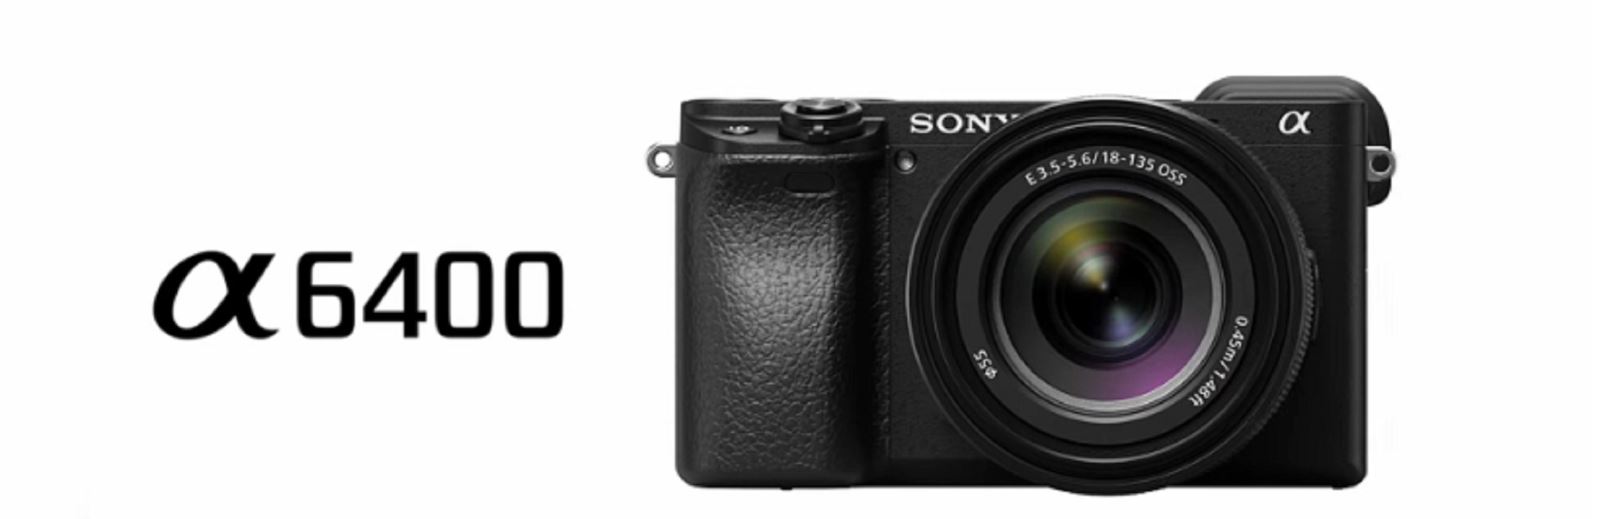 Sony chính thức ra mắt A6400 với video 4K, màn hình lật 180 độ, AF nhanh nhất thế giới